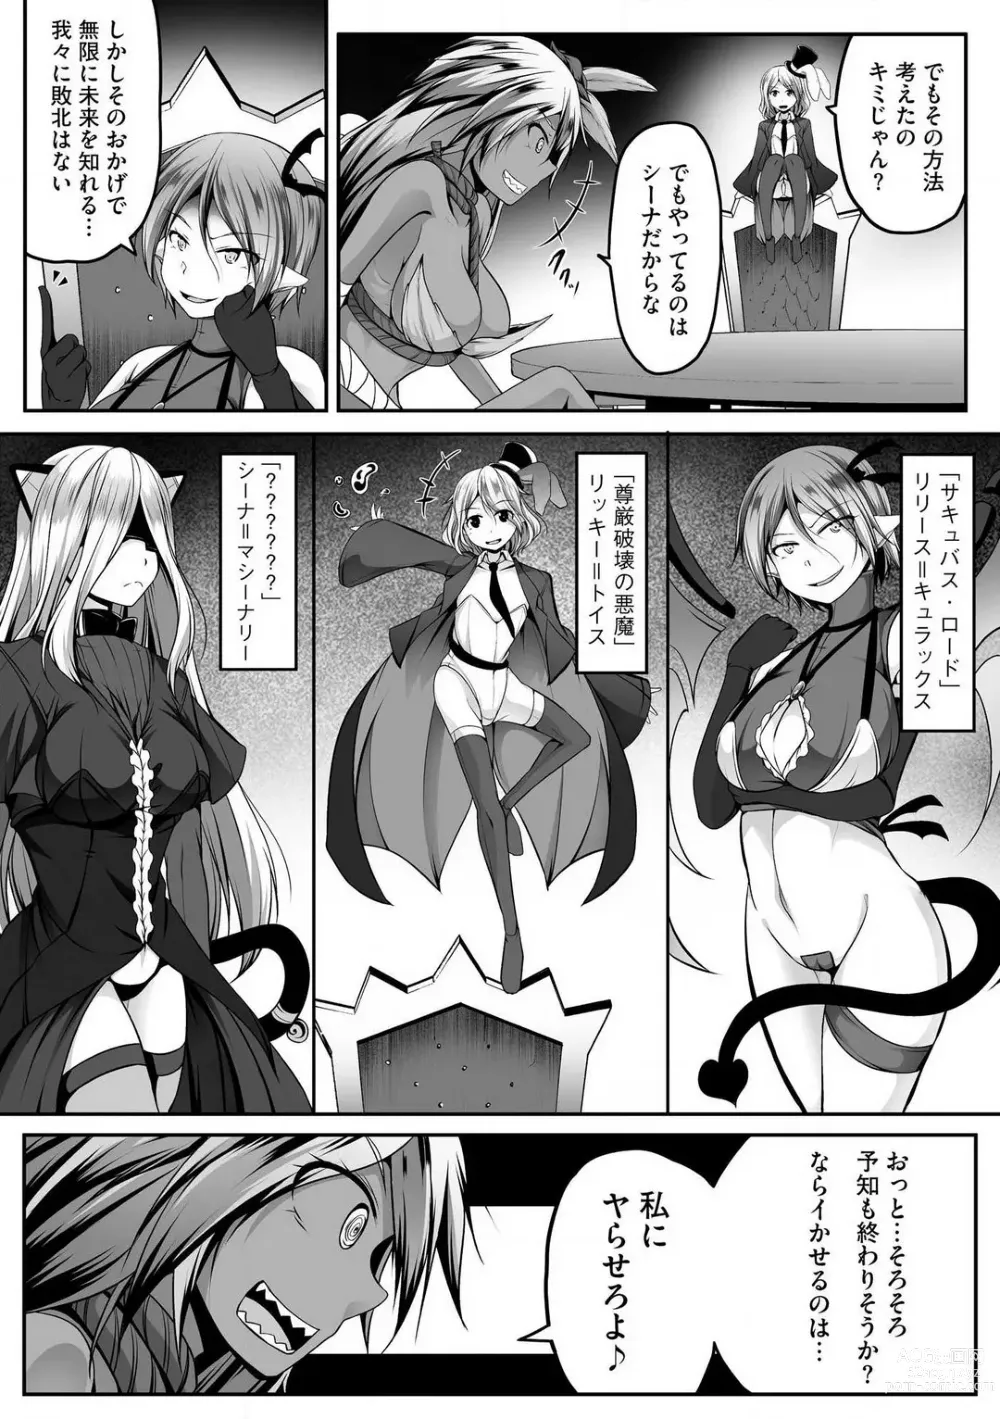 Page 358 of manga Cheat Skill Shihai